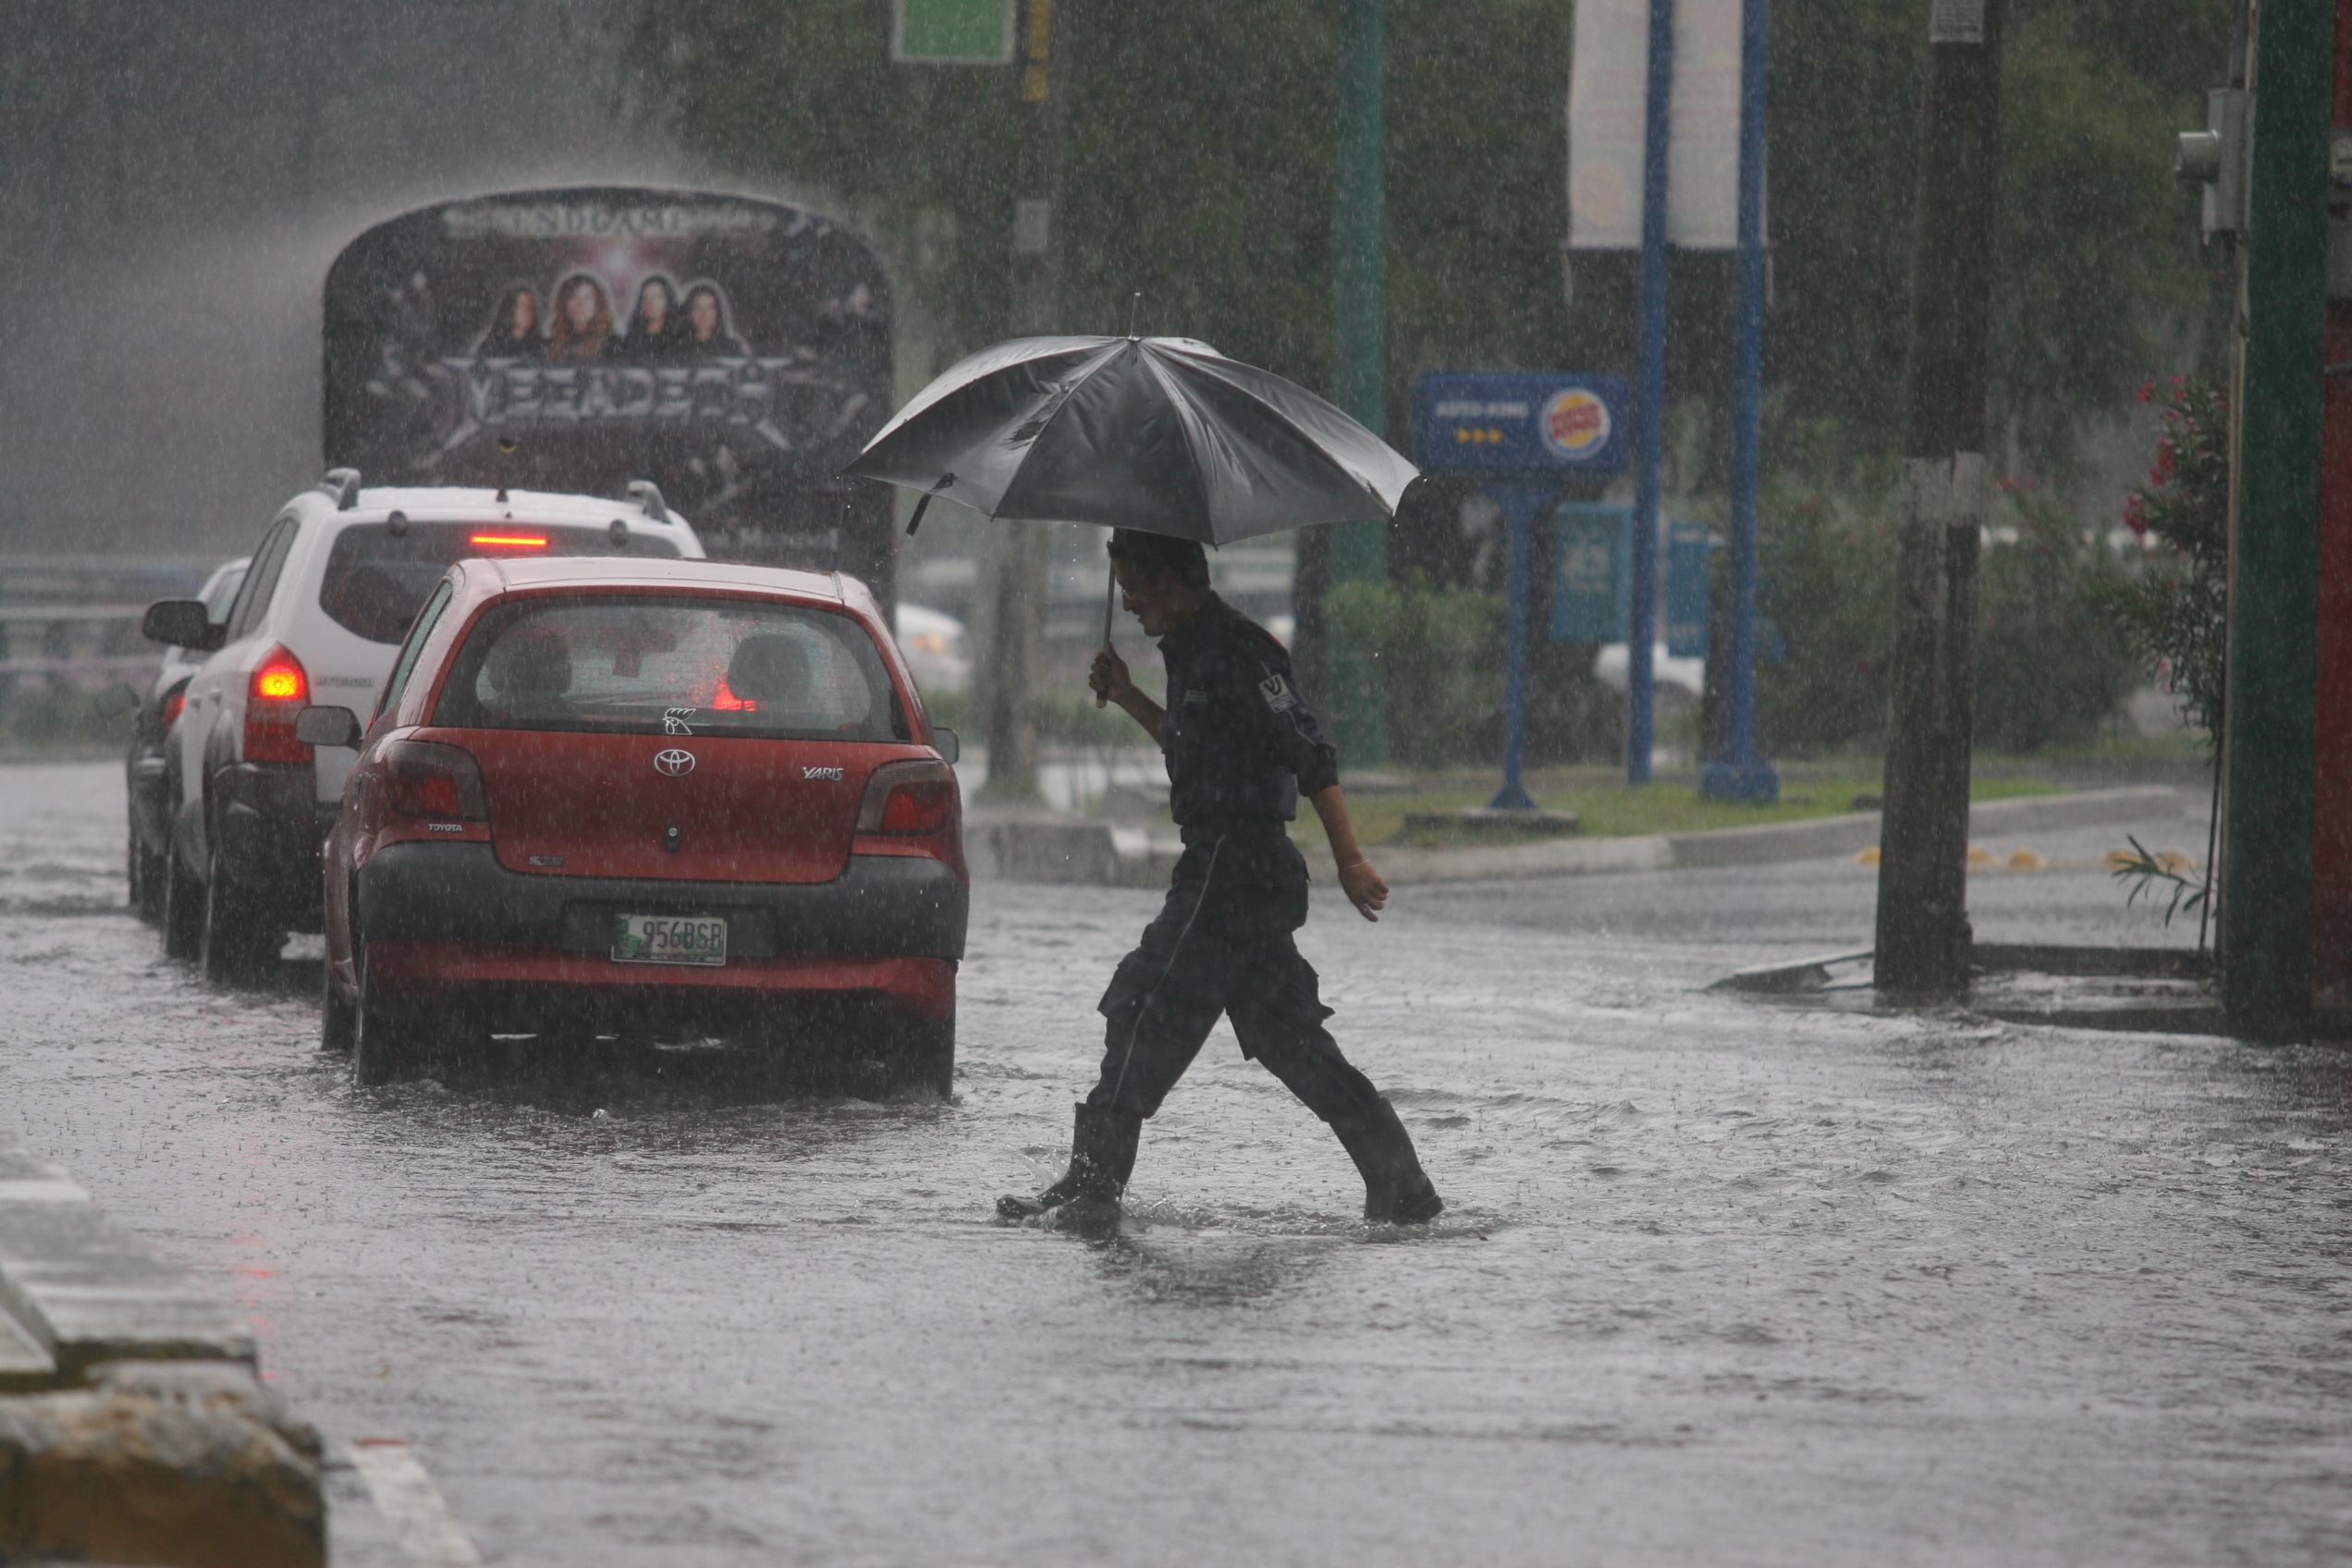 Los atascos durante la lluvia también son provocados por las malas condiciones de los automóviles, según autoridades de tránsito. (Foto Prensa Libre: Hemeroteca PL)